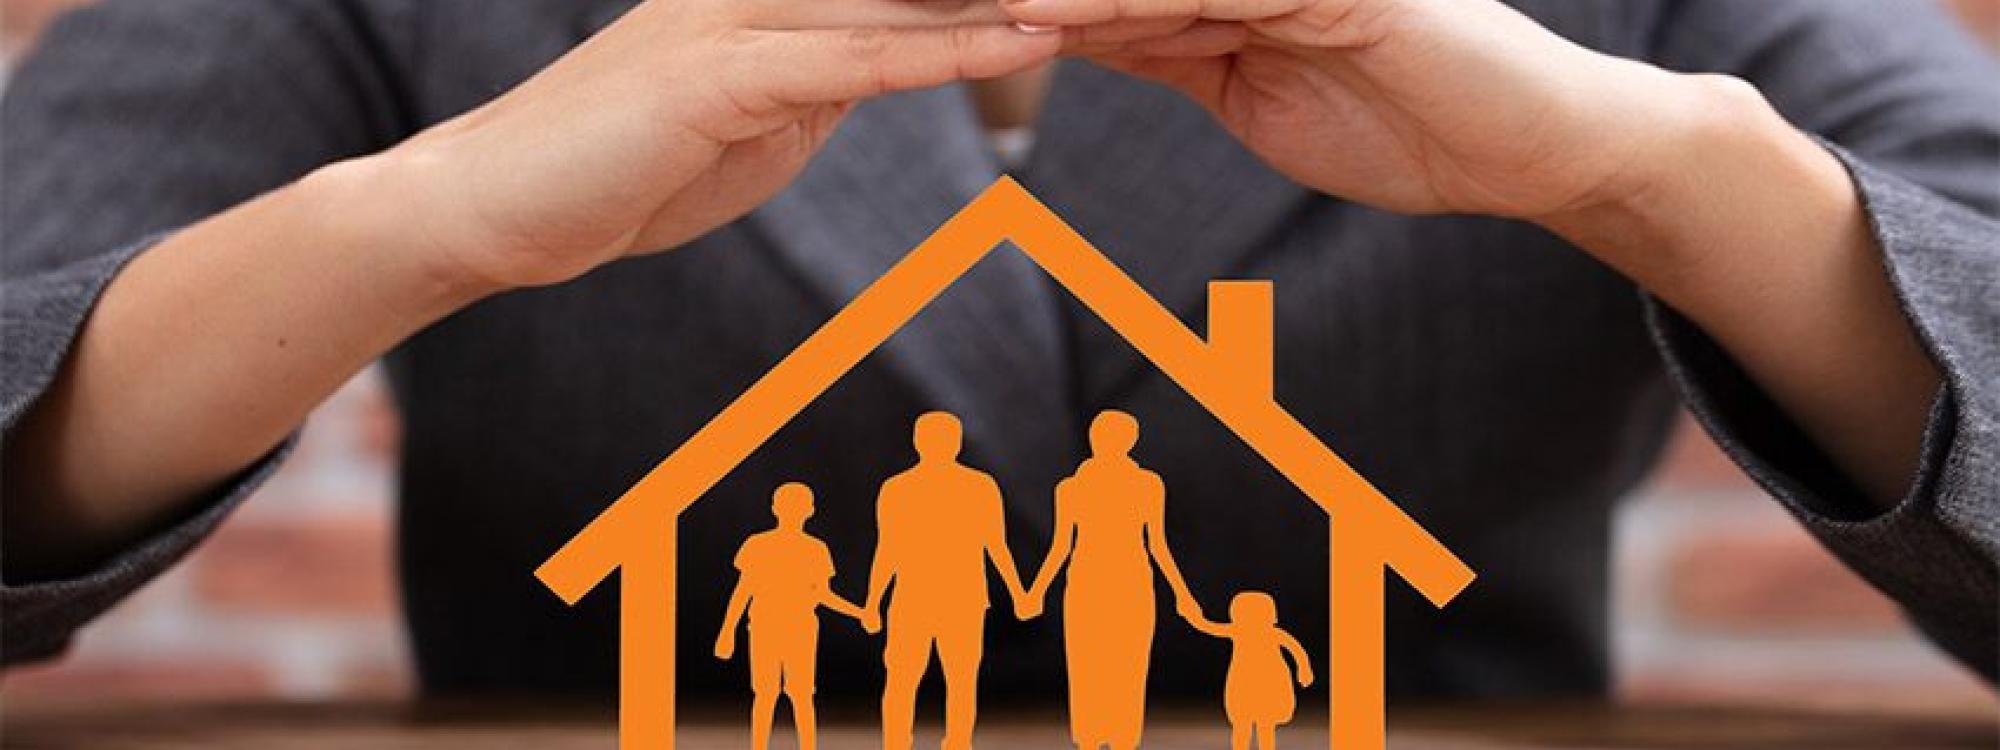 Bezpečnost v rodinném domě: Jak chránit svůj domov a rodinu